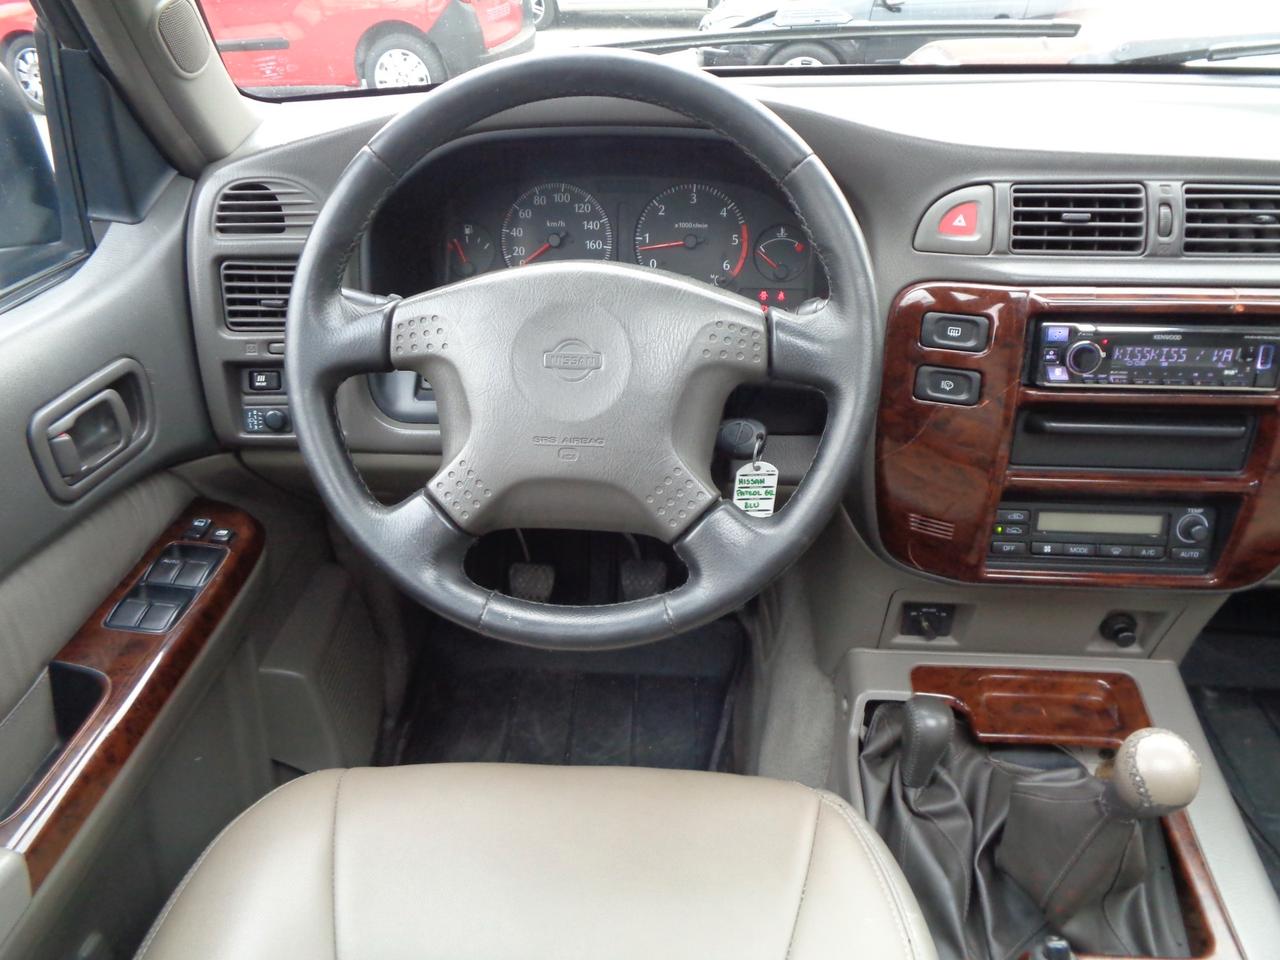 Nissan Patrol GR 3.0 TD Di 5 porte Luxury Wagon